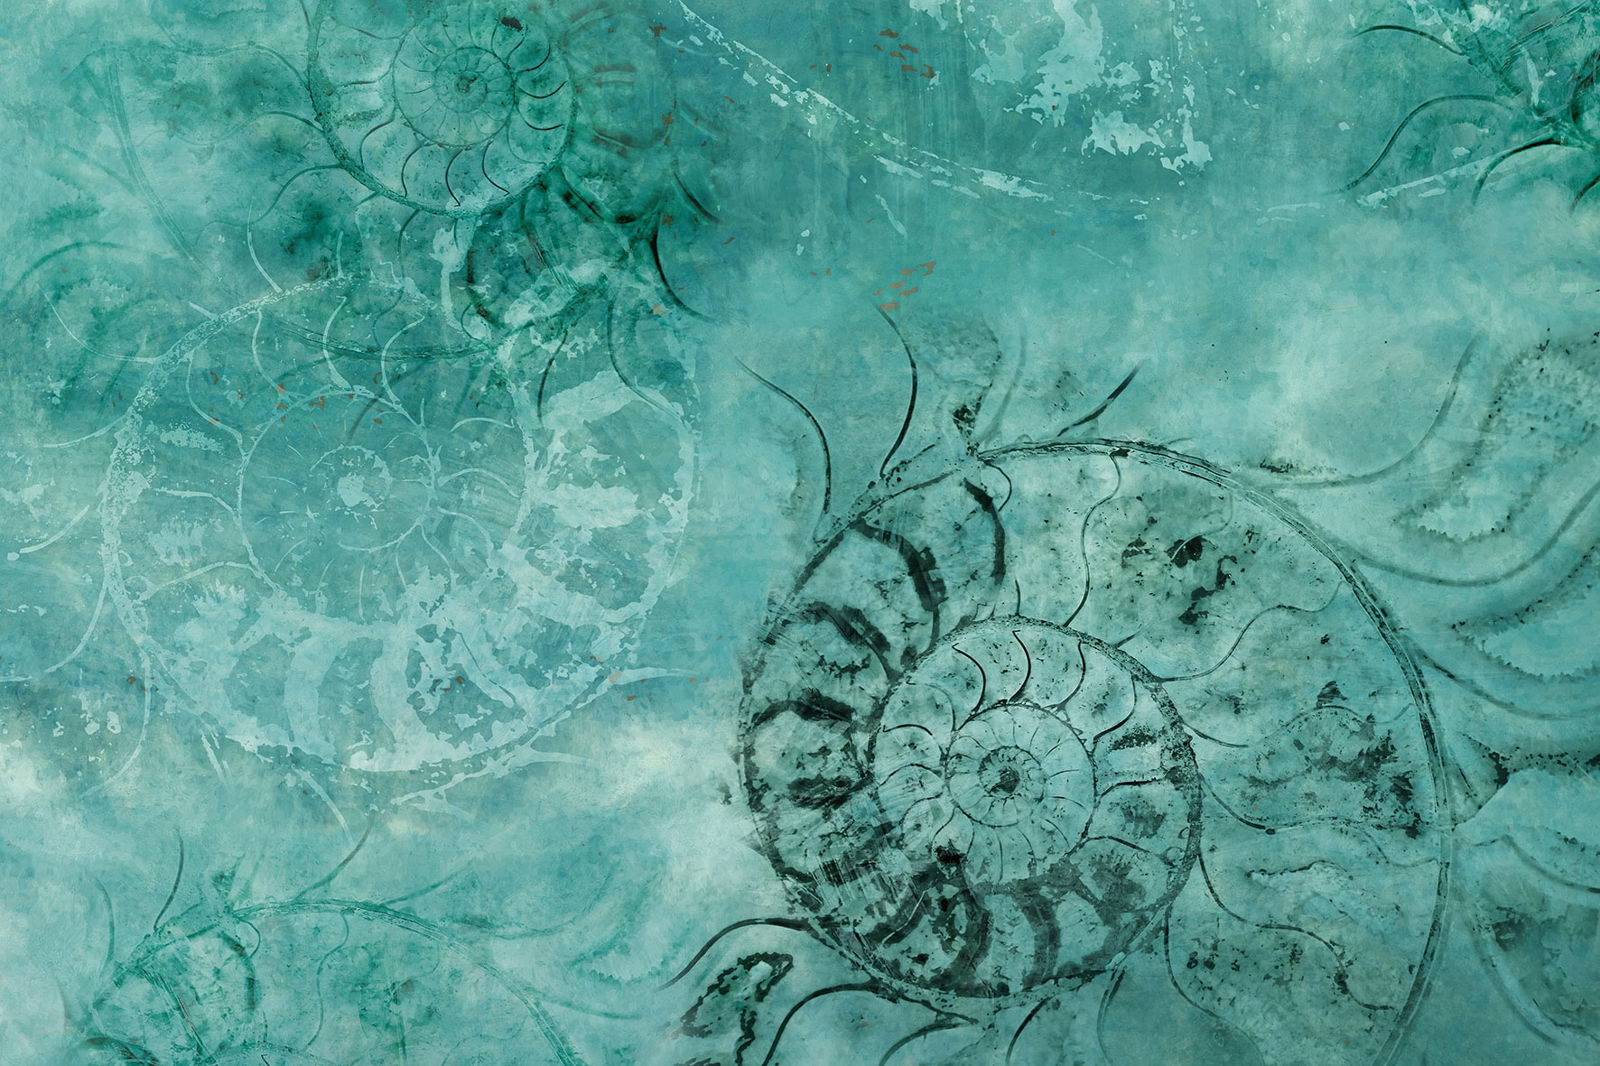 Papel pintado Ammoniti 02 by Instabilelab